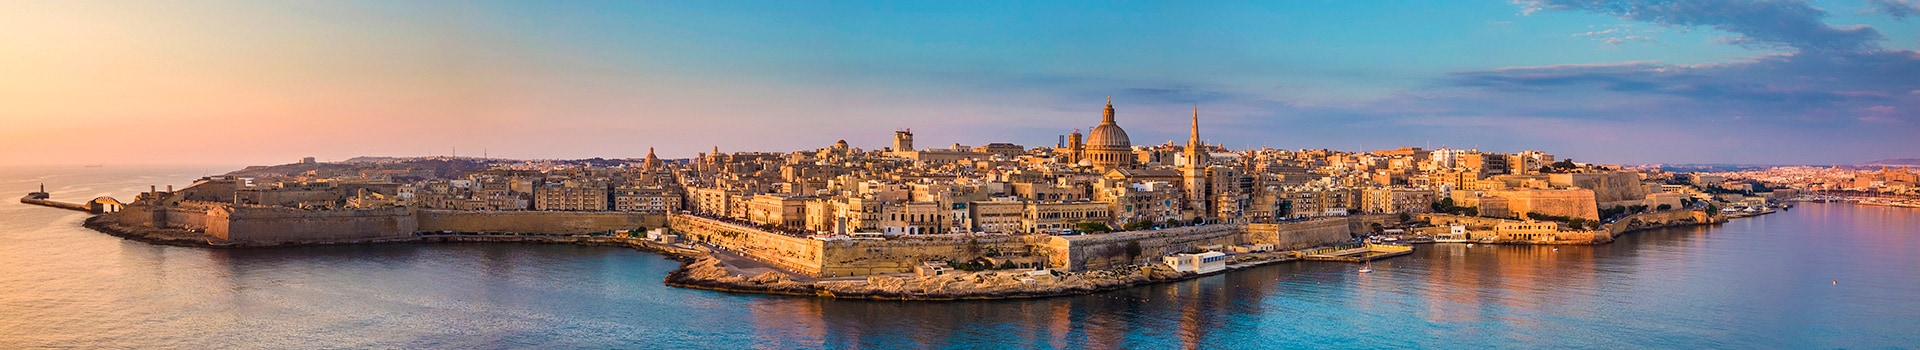 Billetes de Barco de Catania a Malta